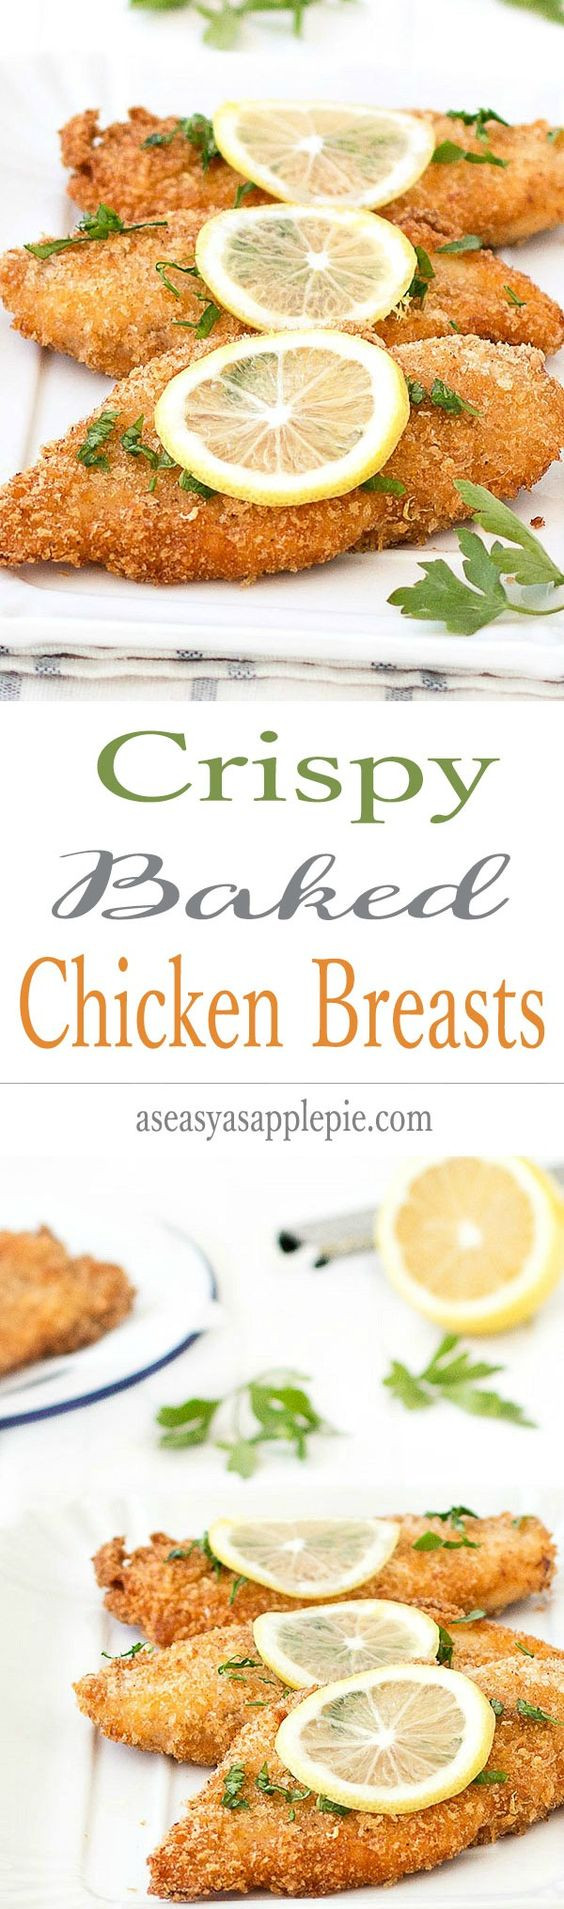 Crispy Baked Chicken Breast
 Crispy Baked Chicken Breasts Recipe